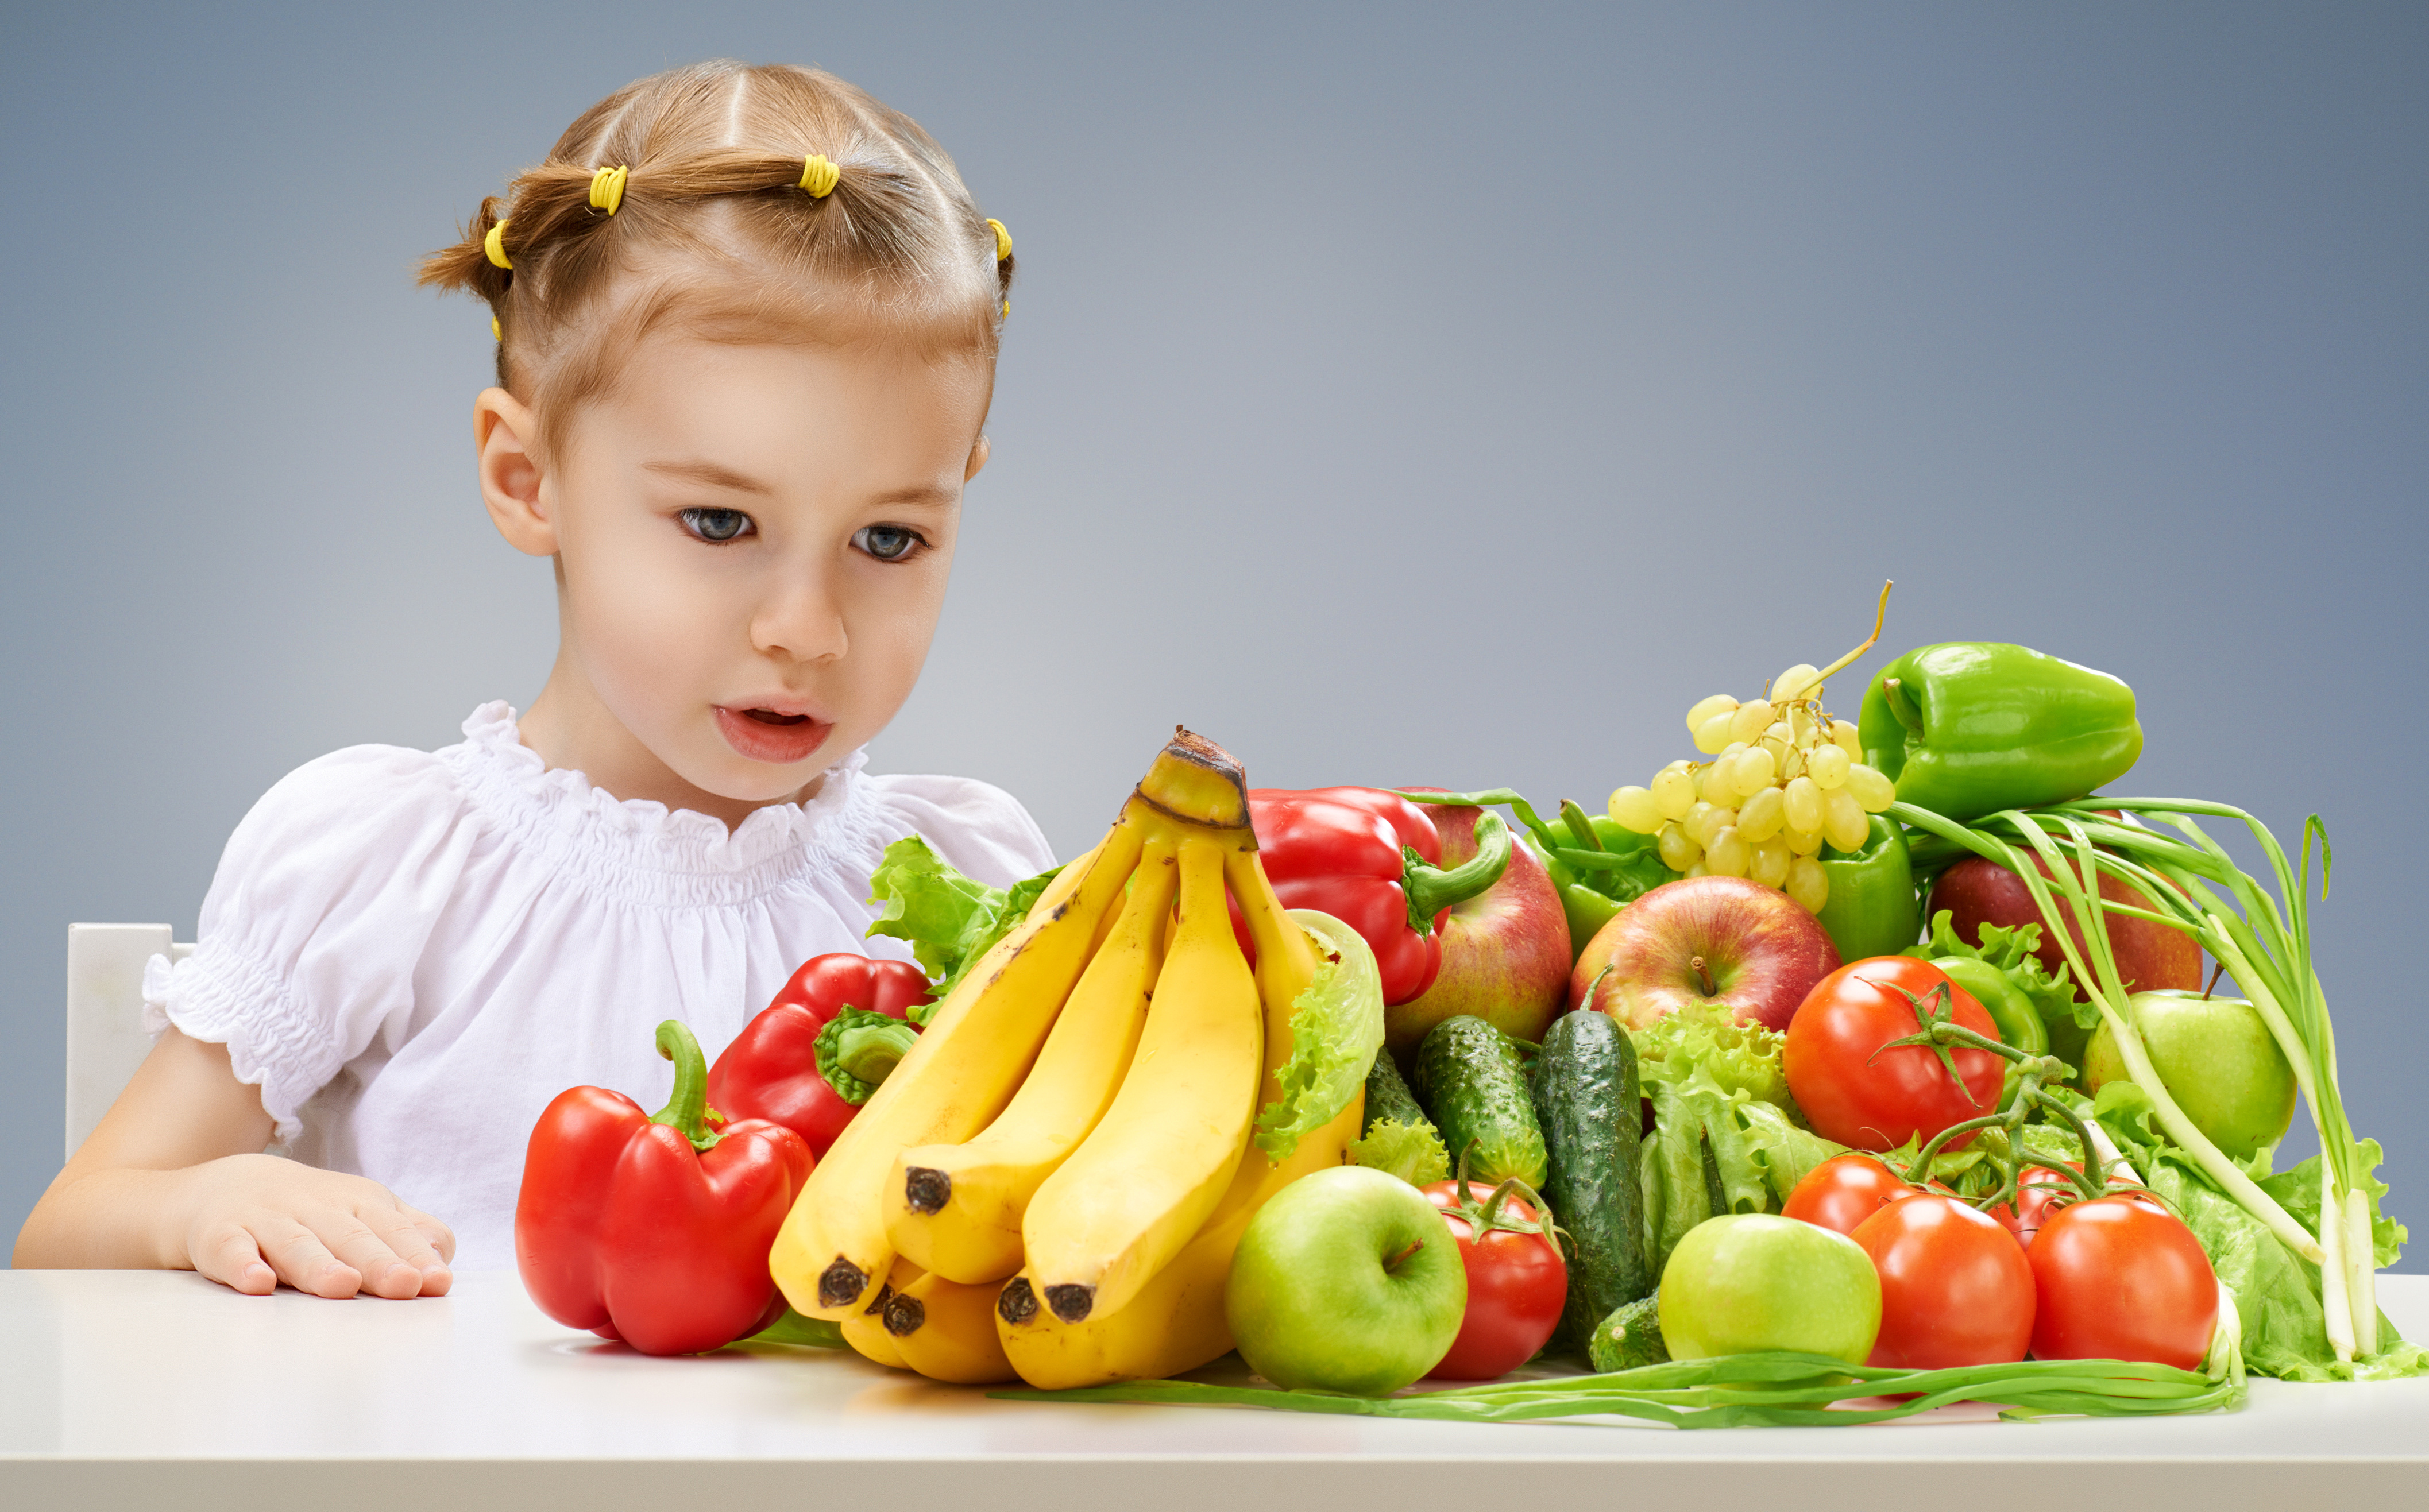 Быть овощем и жить. Овощи и фрукты для детей. Овощи и фрукты в питании детей. Здоровое питание для детей. Фрукты для детей.